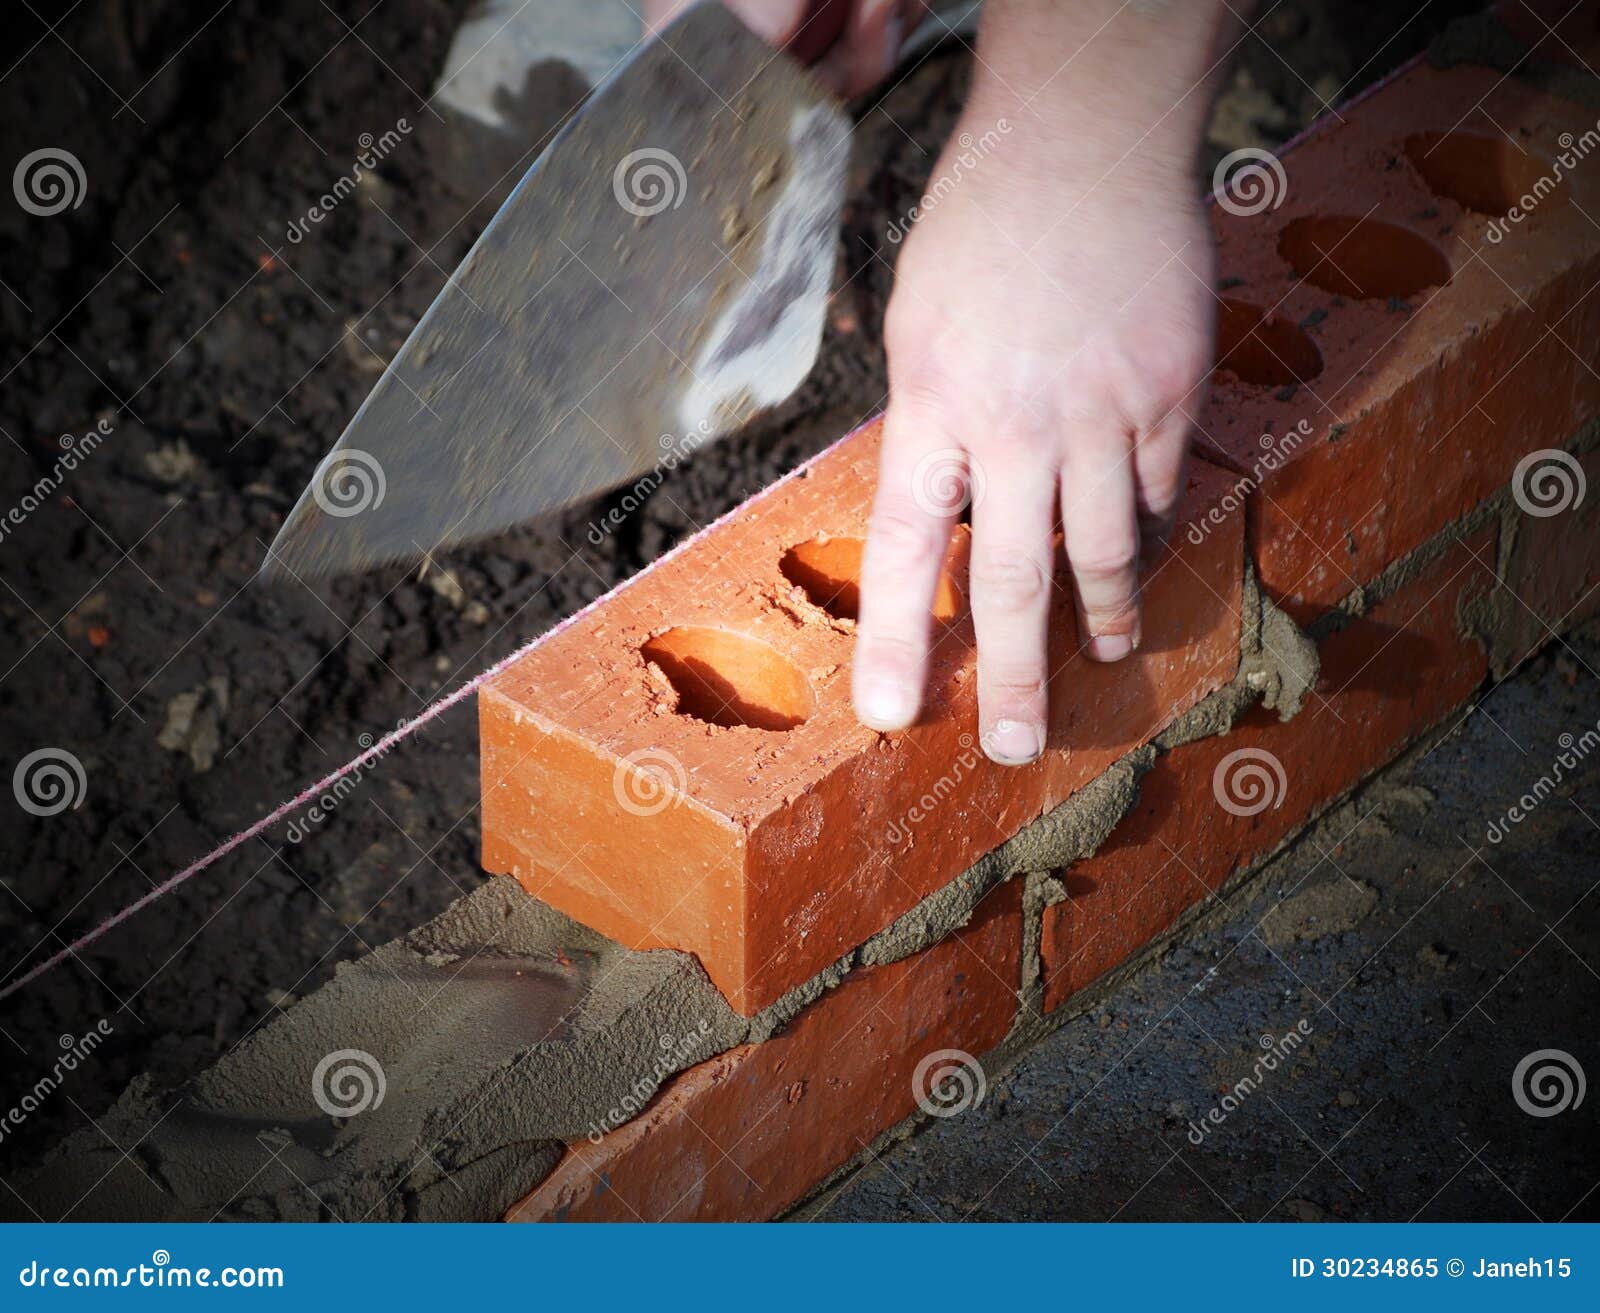 Murarz przy pracą. Zbliżenie kłaść cegły pokazuje kielnię i linię pracownik budowlany.